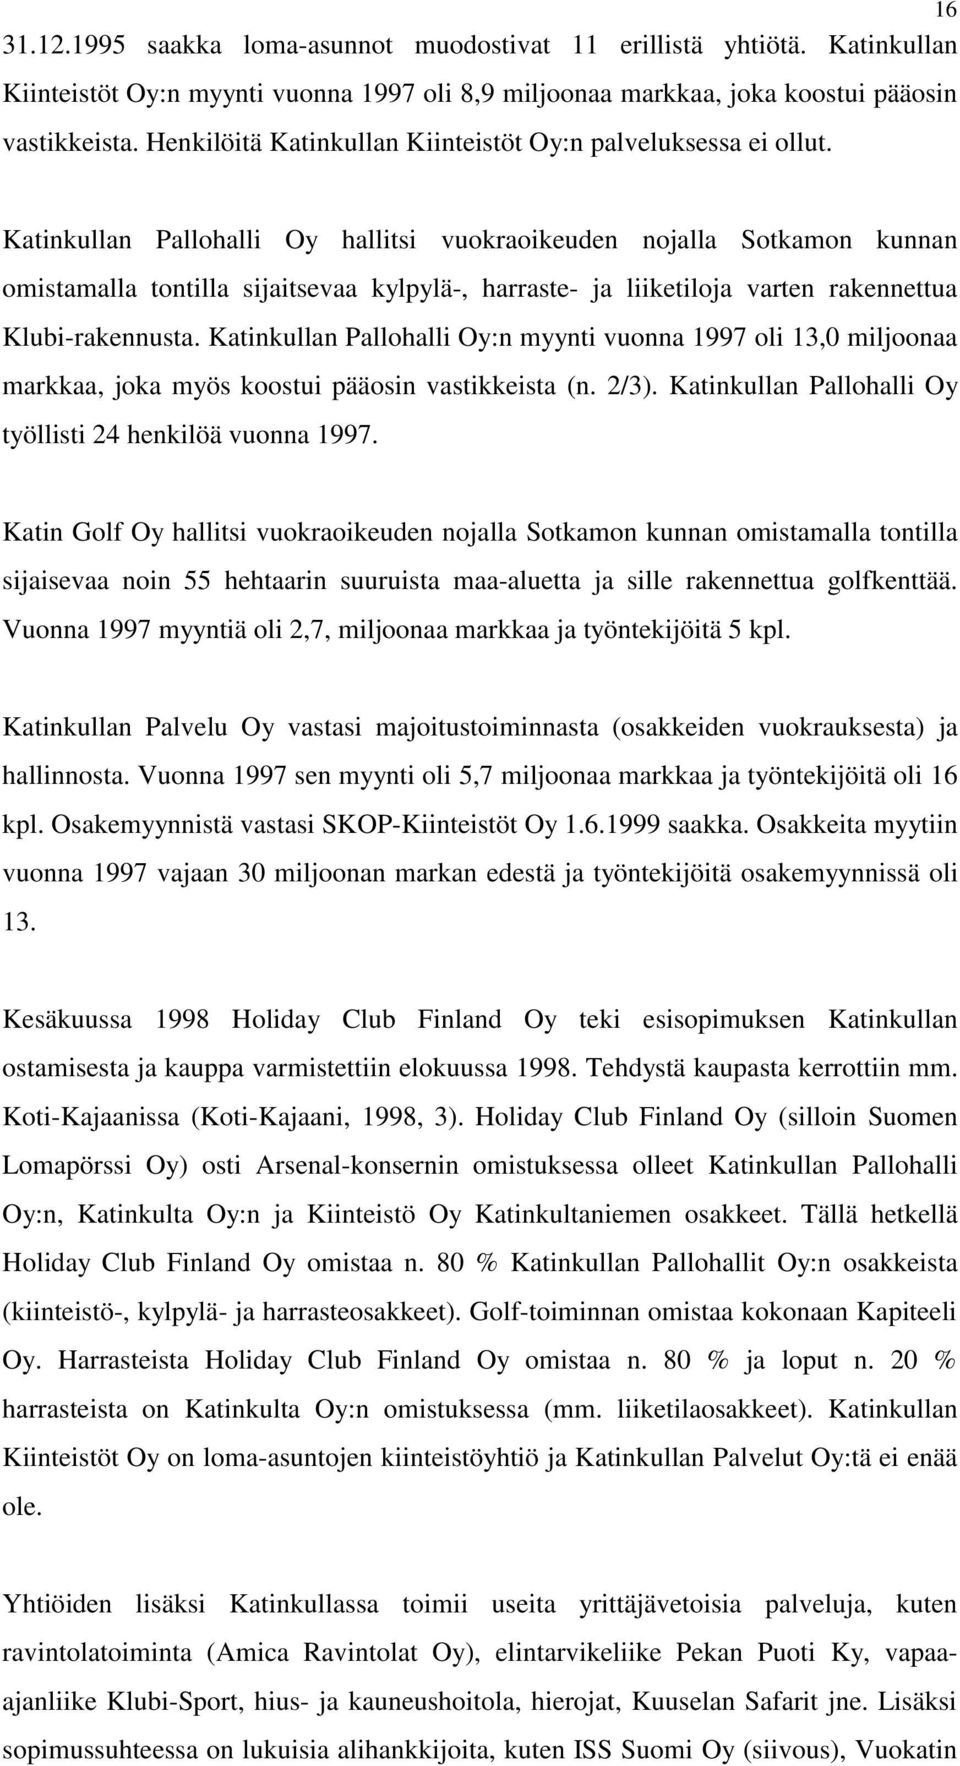 Katinkullan Pallohalli Oy hallitsi vuokraoikeuden nojalla Sotkamon kunnan omistamalla tontilla sijaitsevaa kylpylä-, harraste- ja liiketiloja varten rakennettua Klubi-rakennusta.